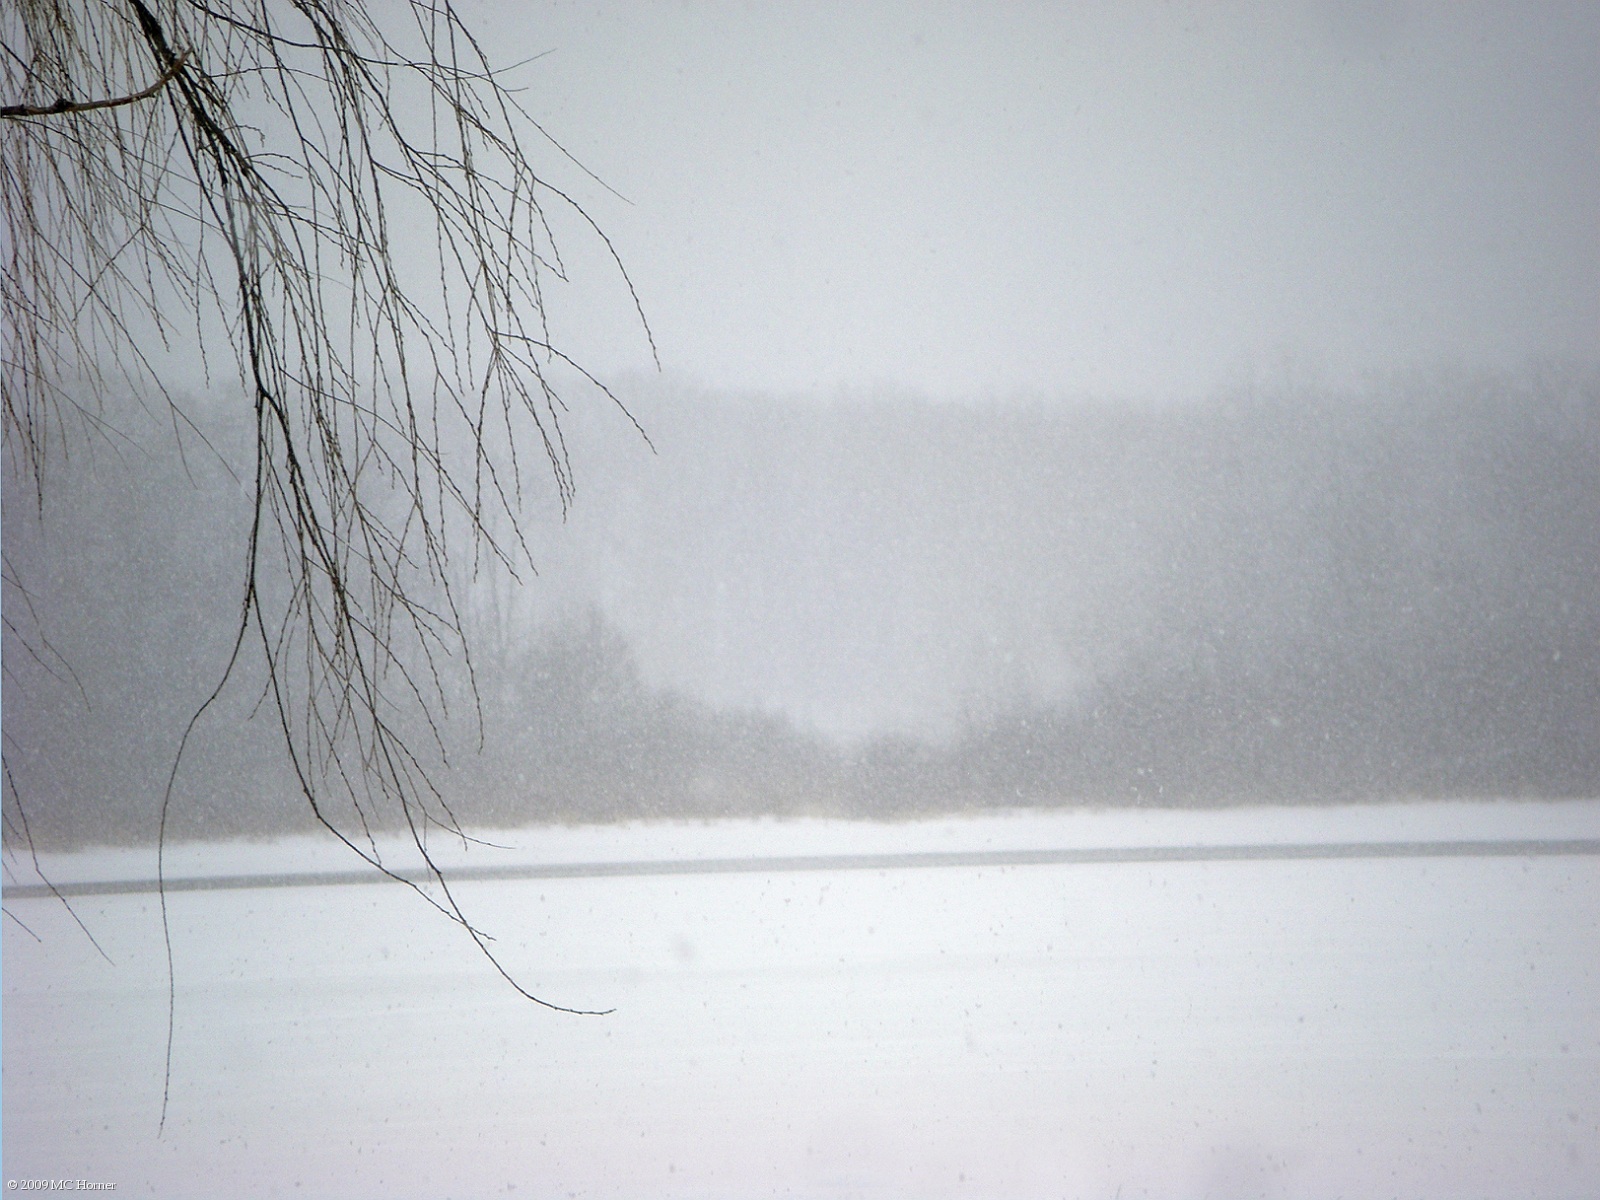 Snowy lake.